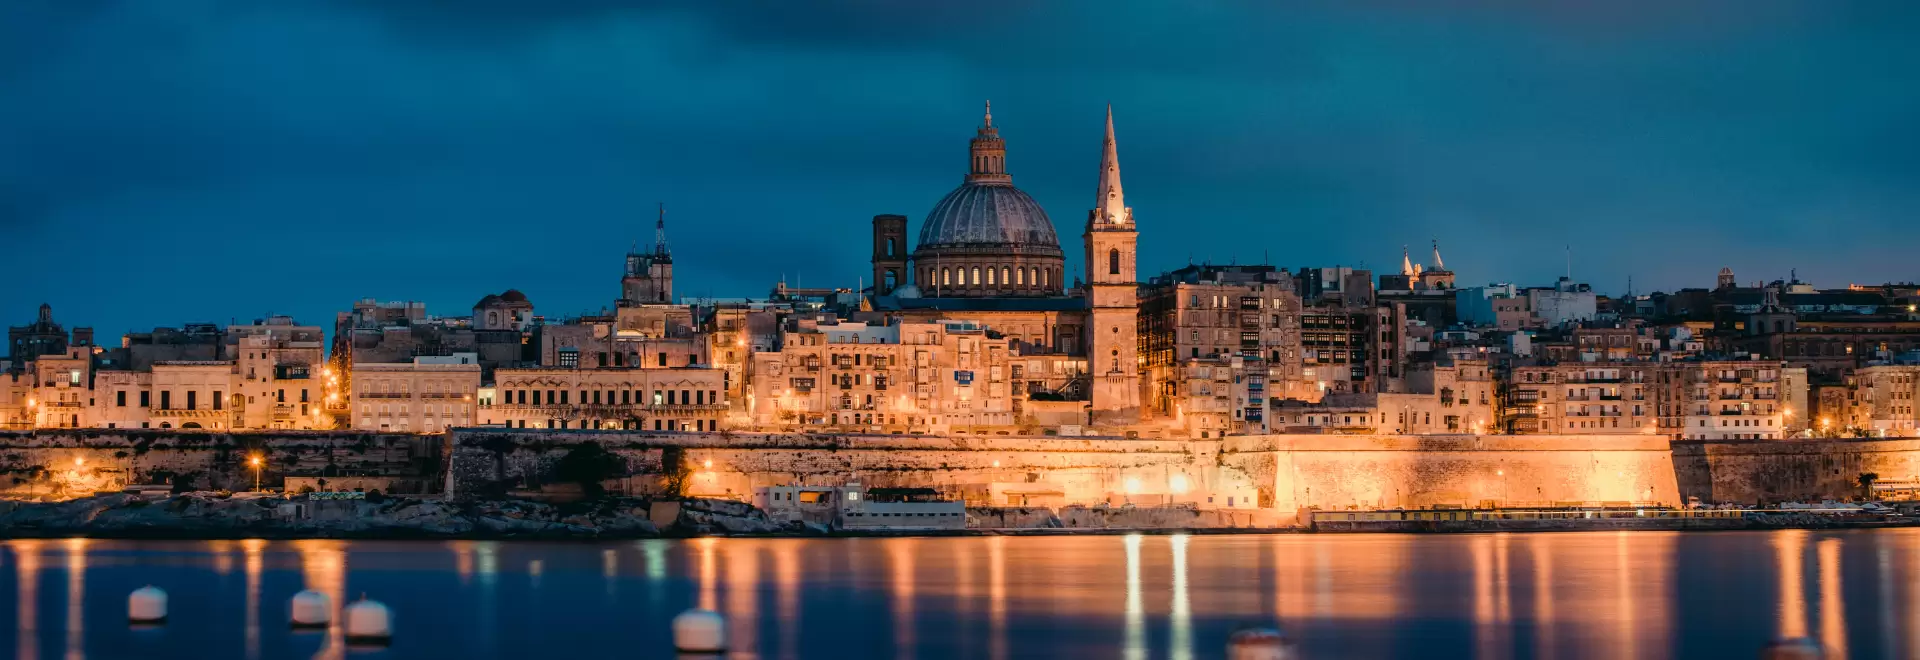 Revelion în Malta